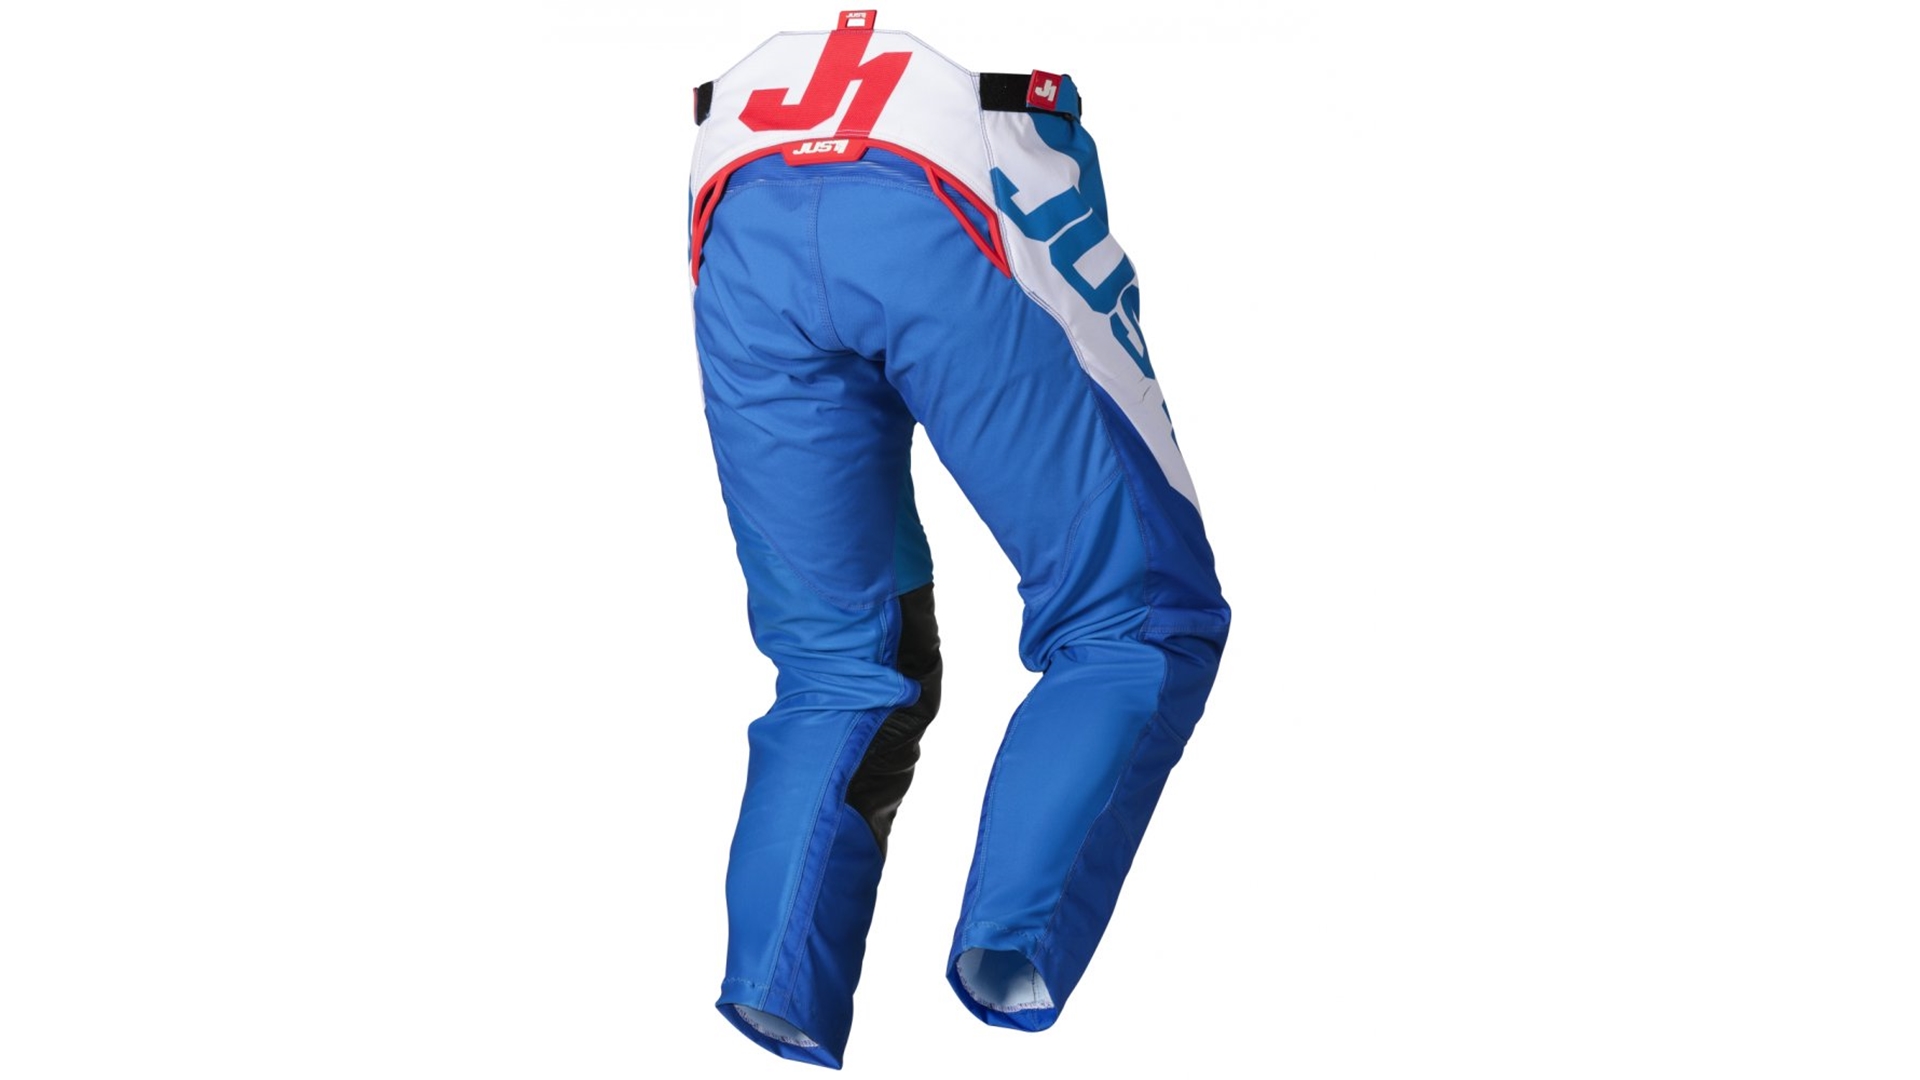 JUST1 J-FORCE VERTIGO moto kalhoty modrá/bílá/červená 40